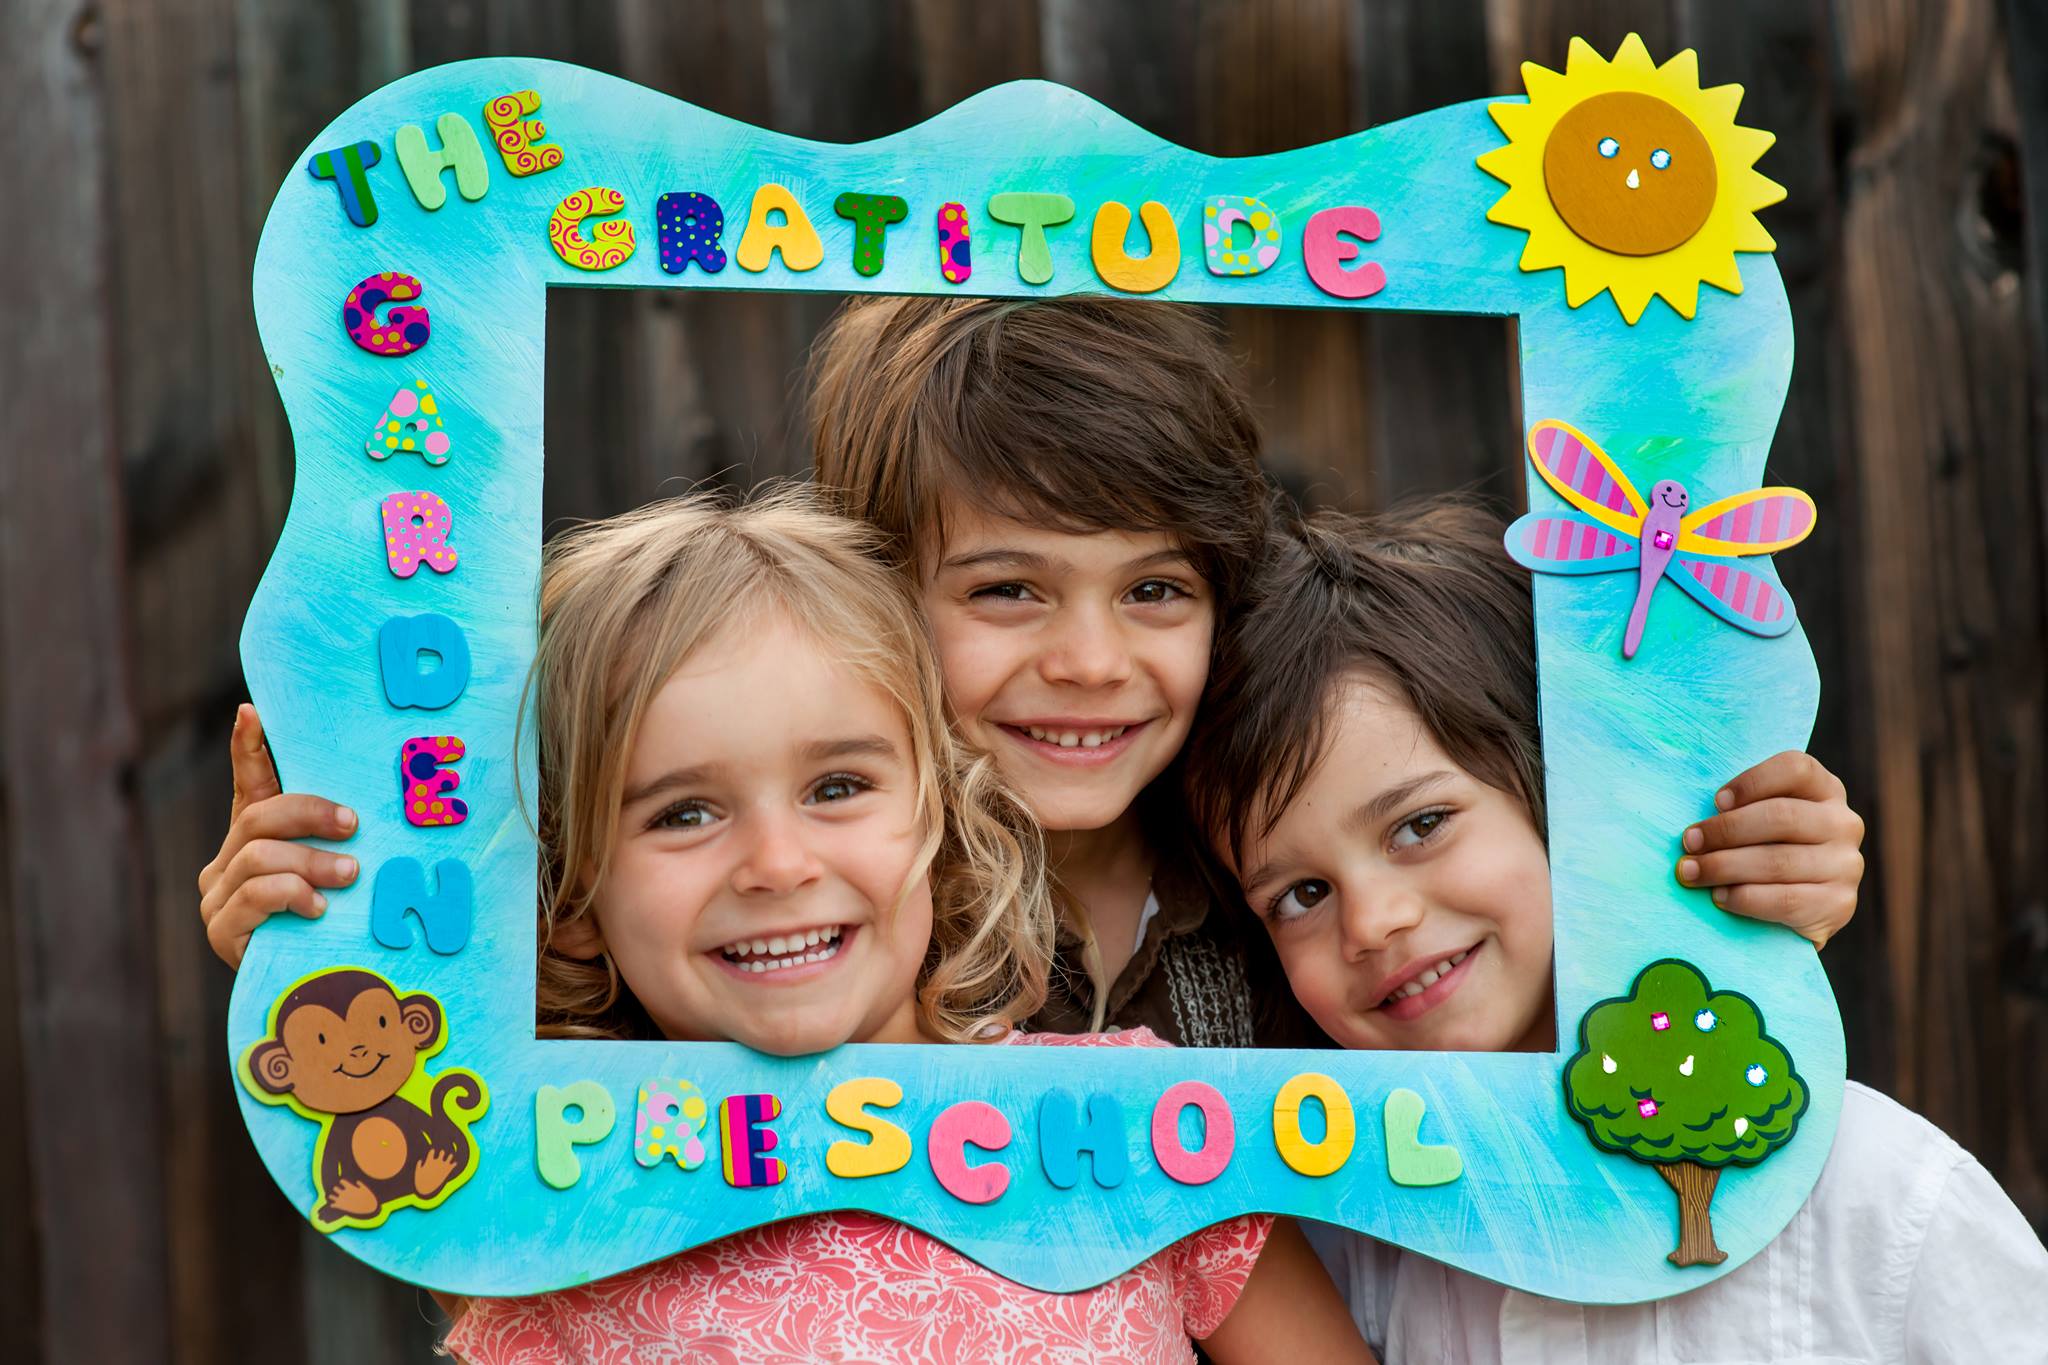 San Clemente Times Announces Grand Opening of The Gratitude Garden Preschool